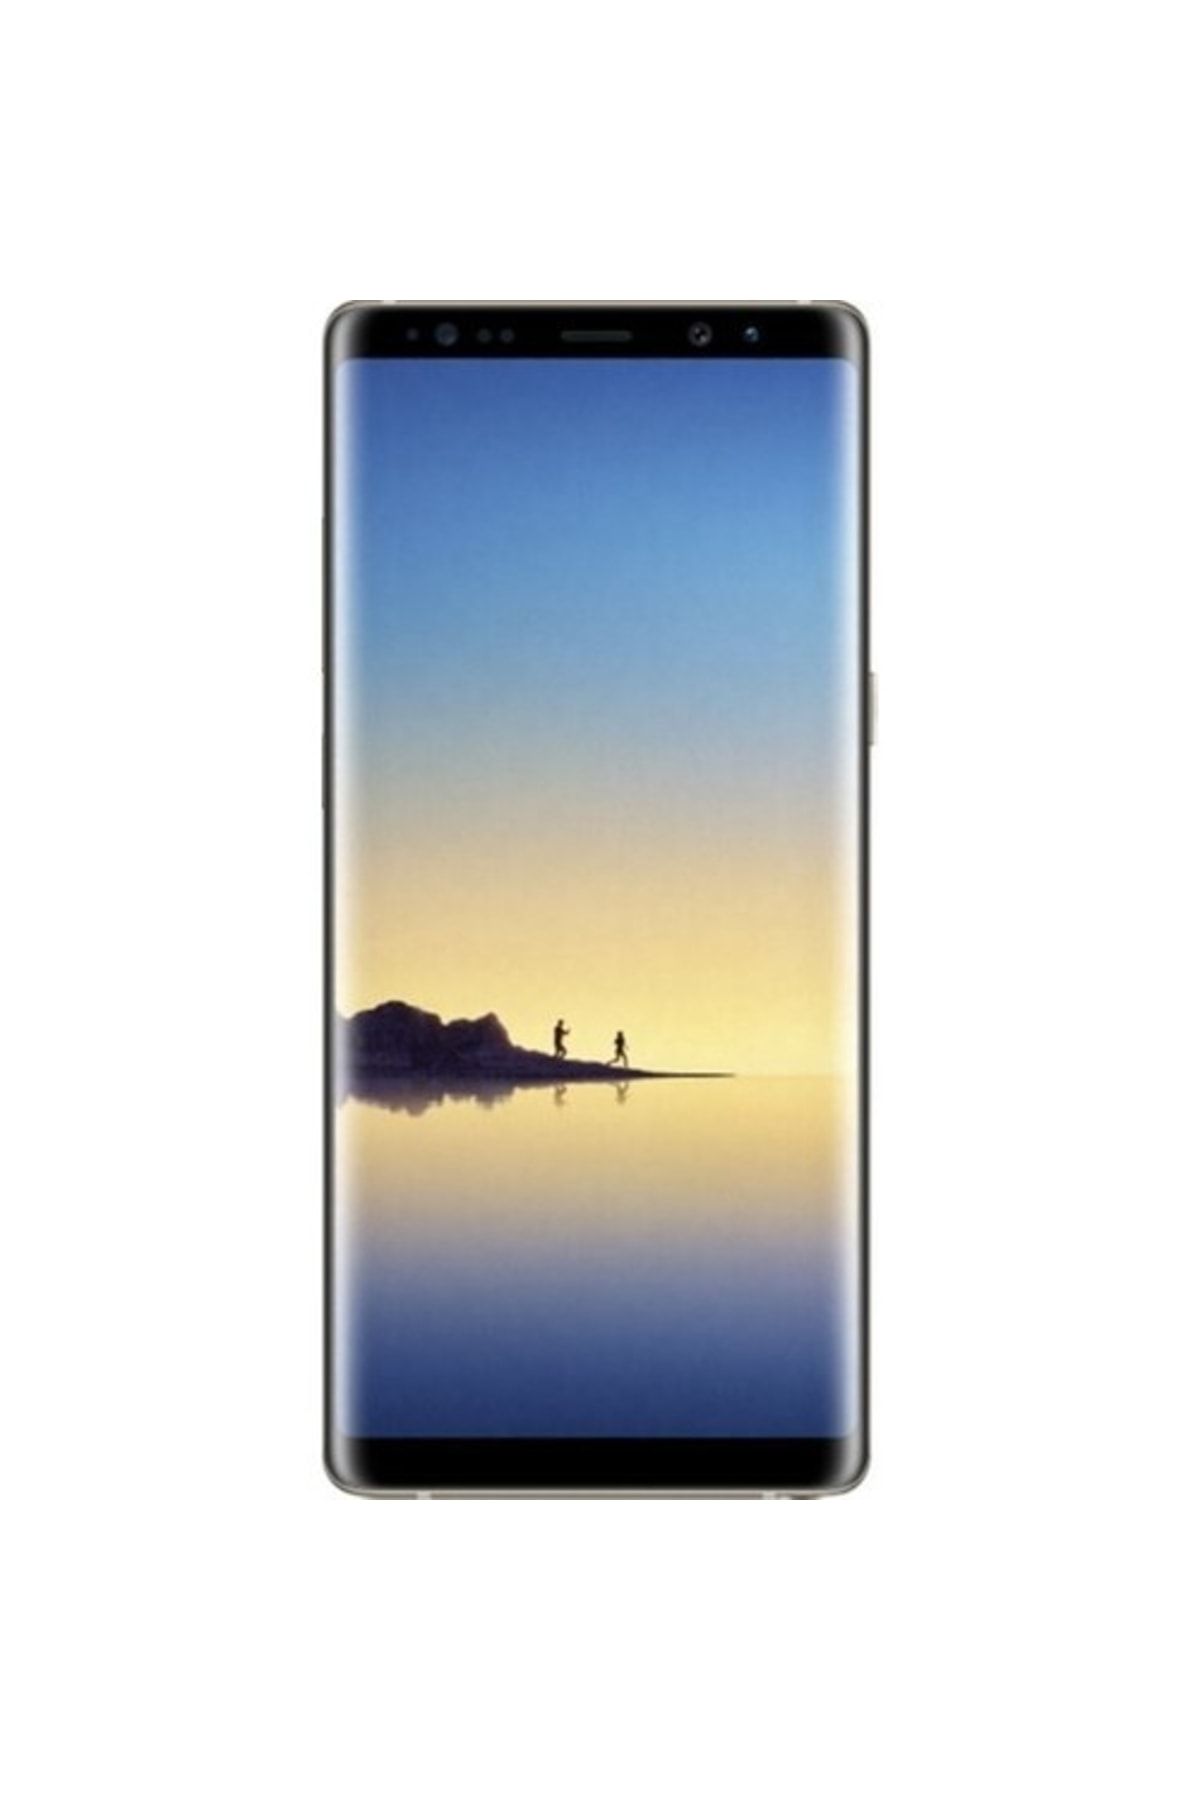 Samsung Yenilenmiş Galaxy Note 8 Gray 64gb B Kalite (12 Ay Garantili)